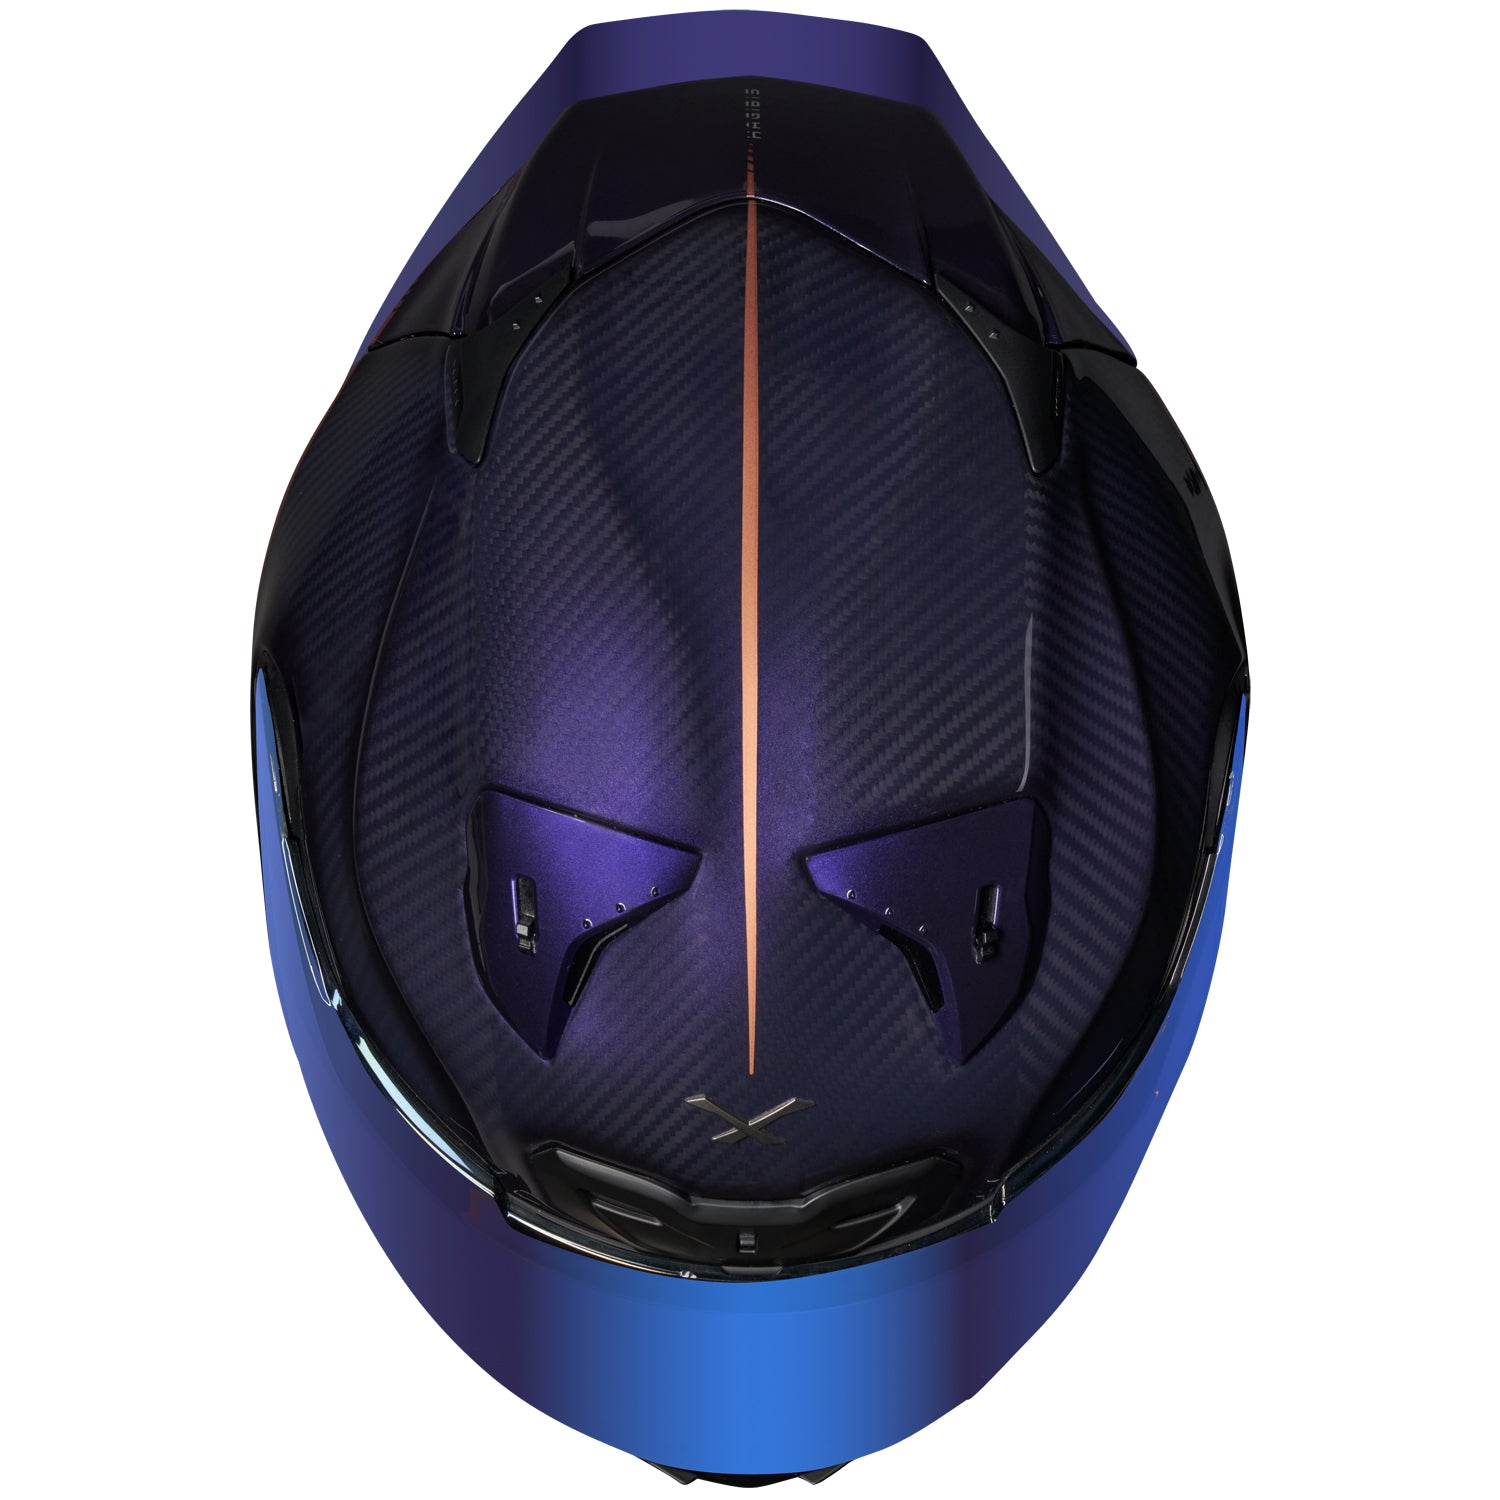 NEXX X.R3R Hagibis Helmet